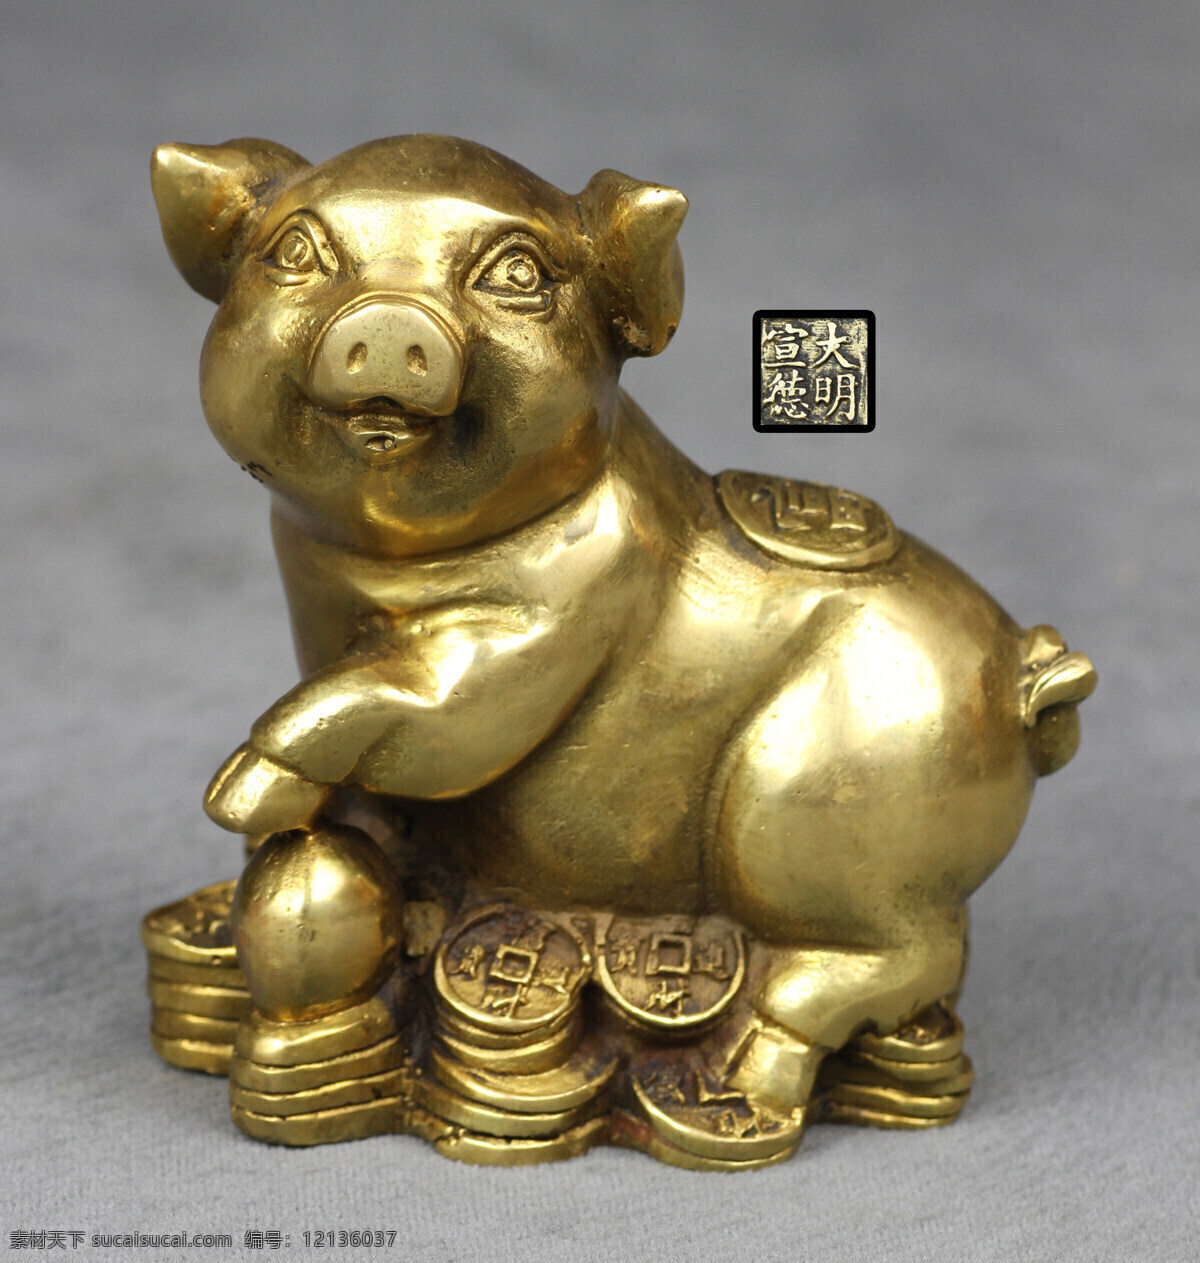 猪摆件 猪年工艺品 猪年雕像 猪年 十二生肖 亥猪 猪工艺品 猪年素材 猪年新年 金猪 文化艺术 传统文化